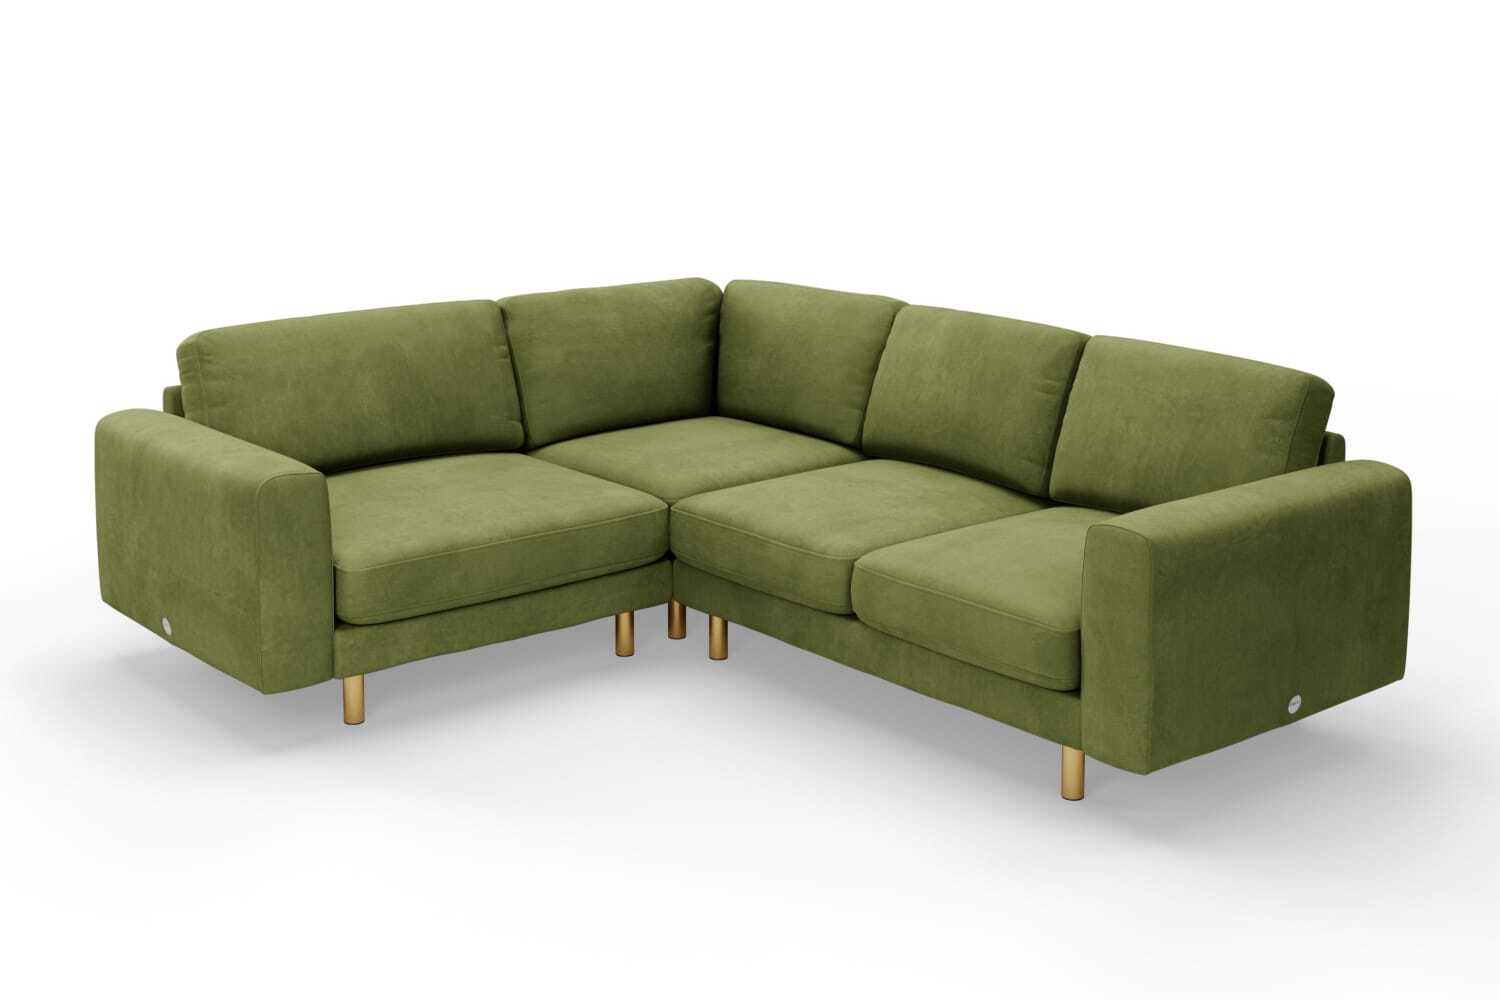 SNUG | The Big Chill Corner Sofa Small in Olive